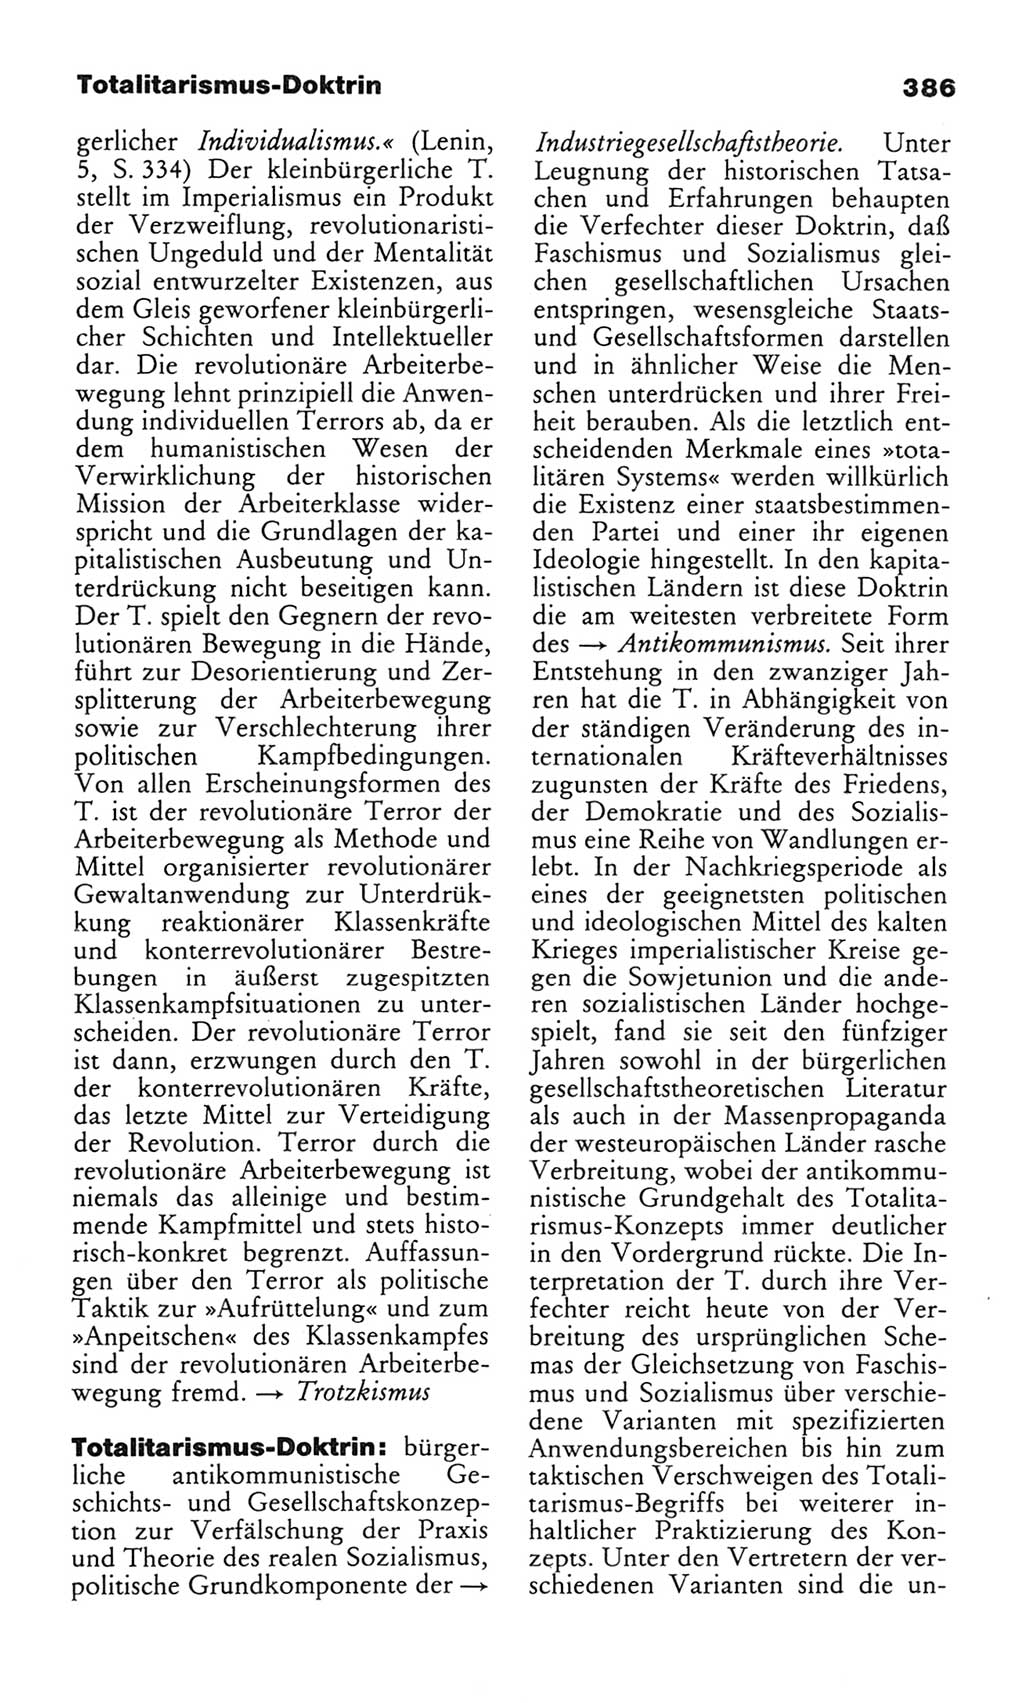 Wörterbuch des wissenschaftlichen Kommunismus [Deutsche Demokratische Republik (DDR)] 1982, Seite 386 (Wb. wiss. Komm. DDR 1982, S. 386)